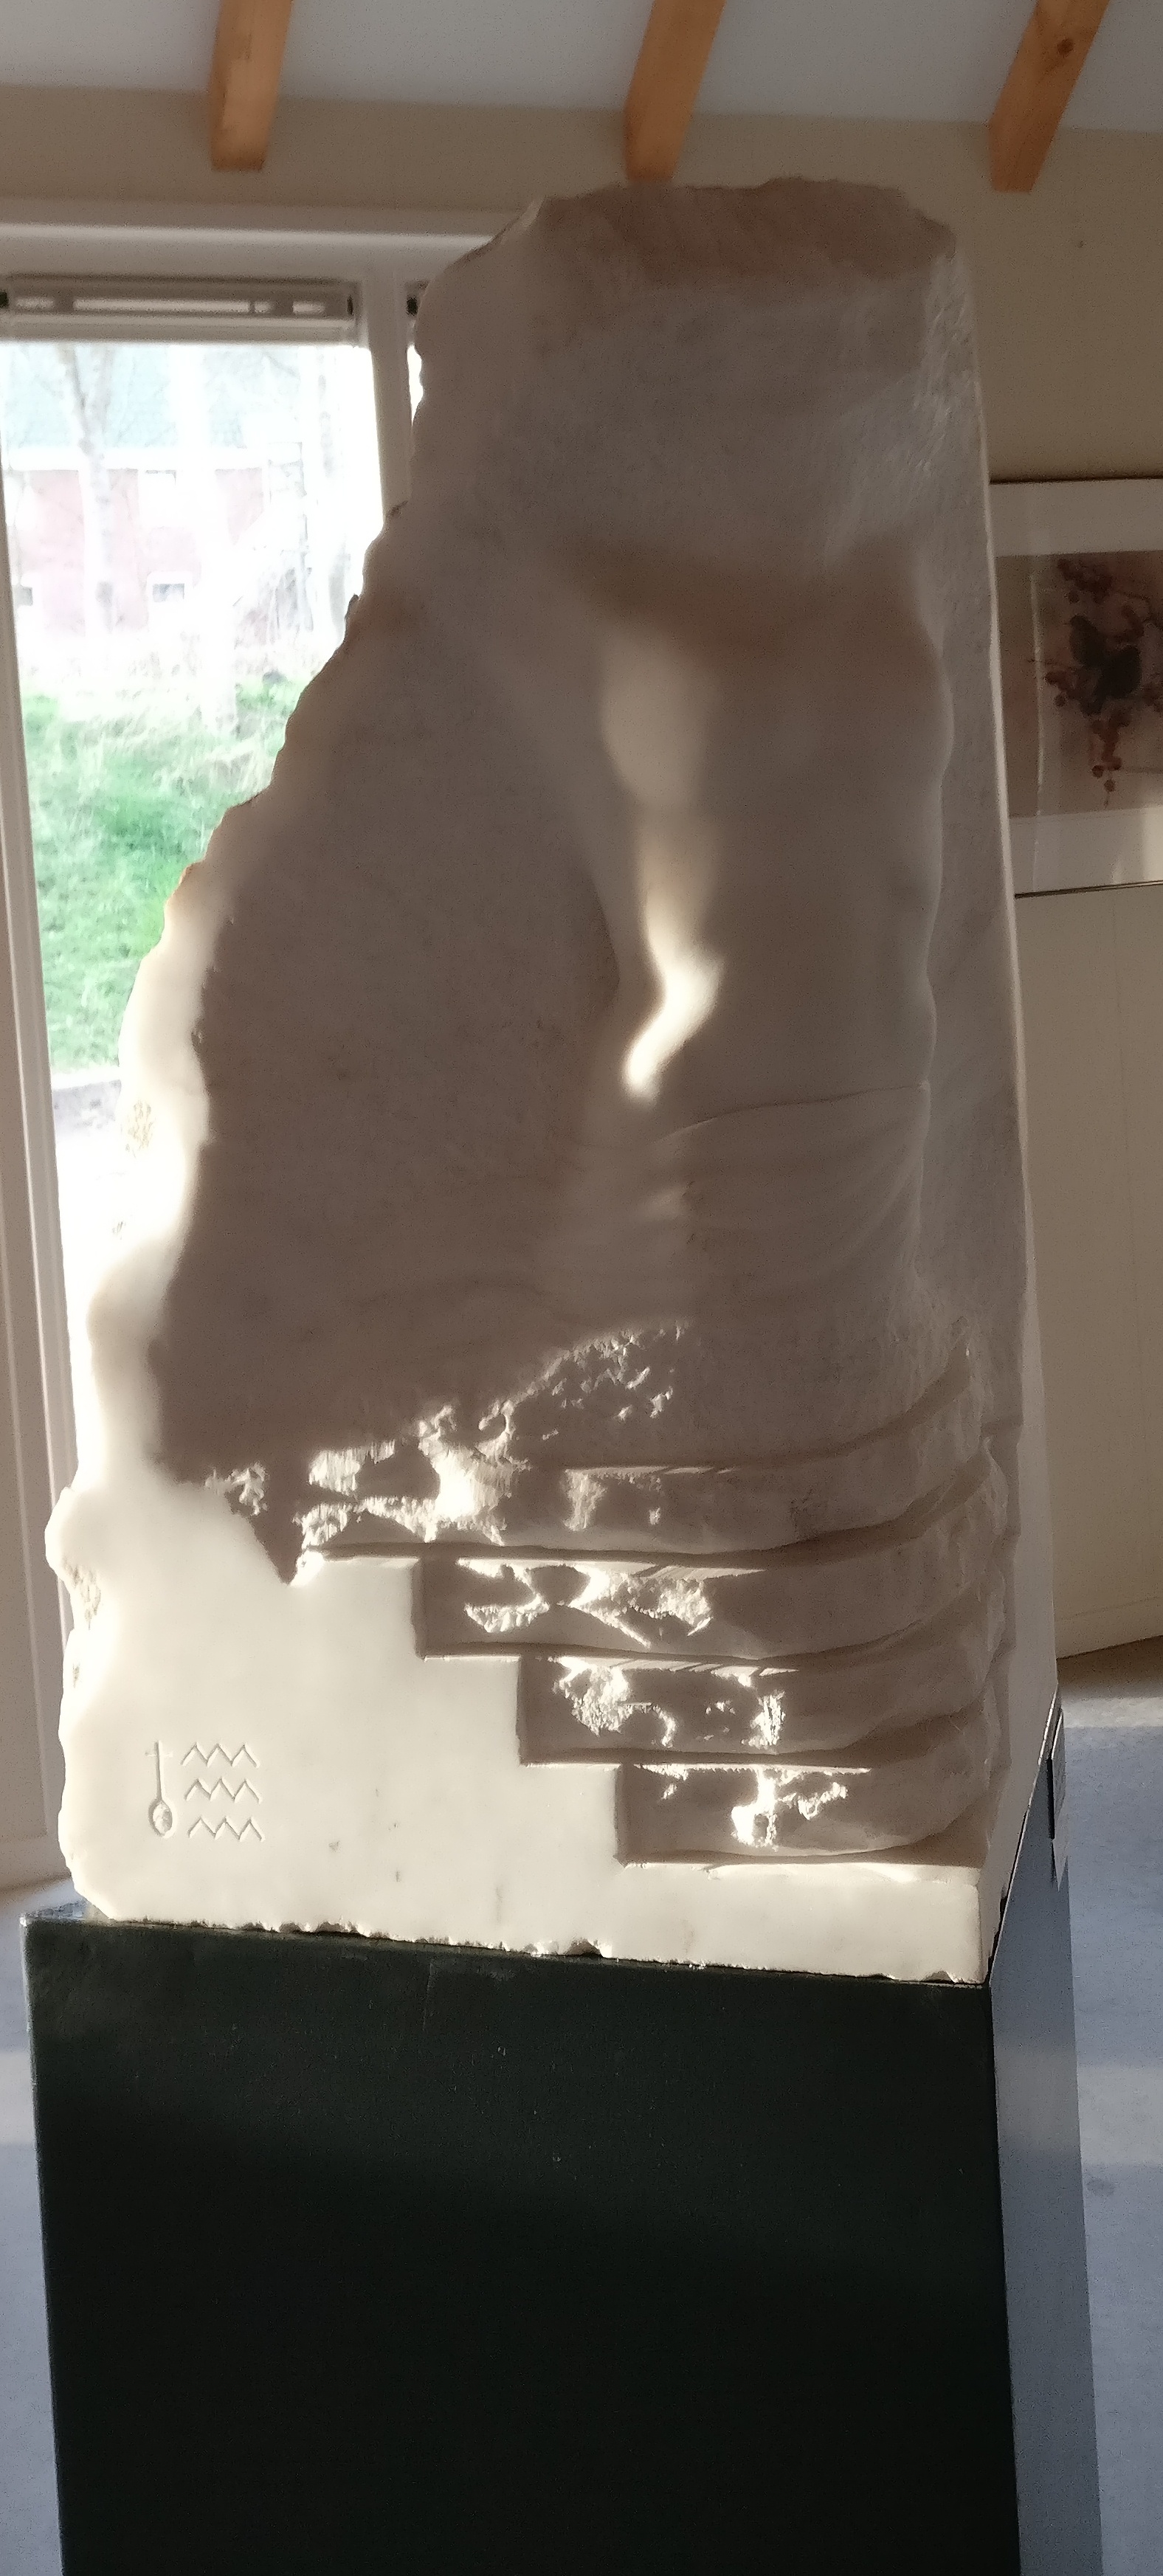 Amor Fugit marble sculpture by J van Bavel